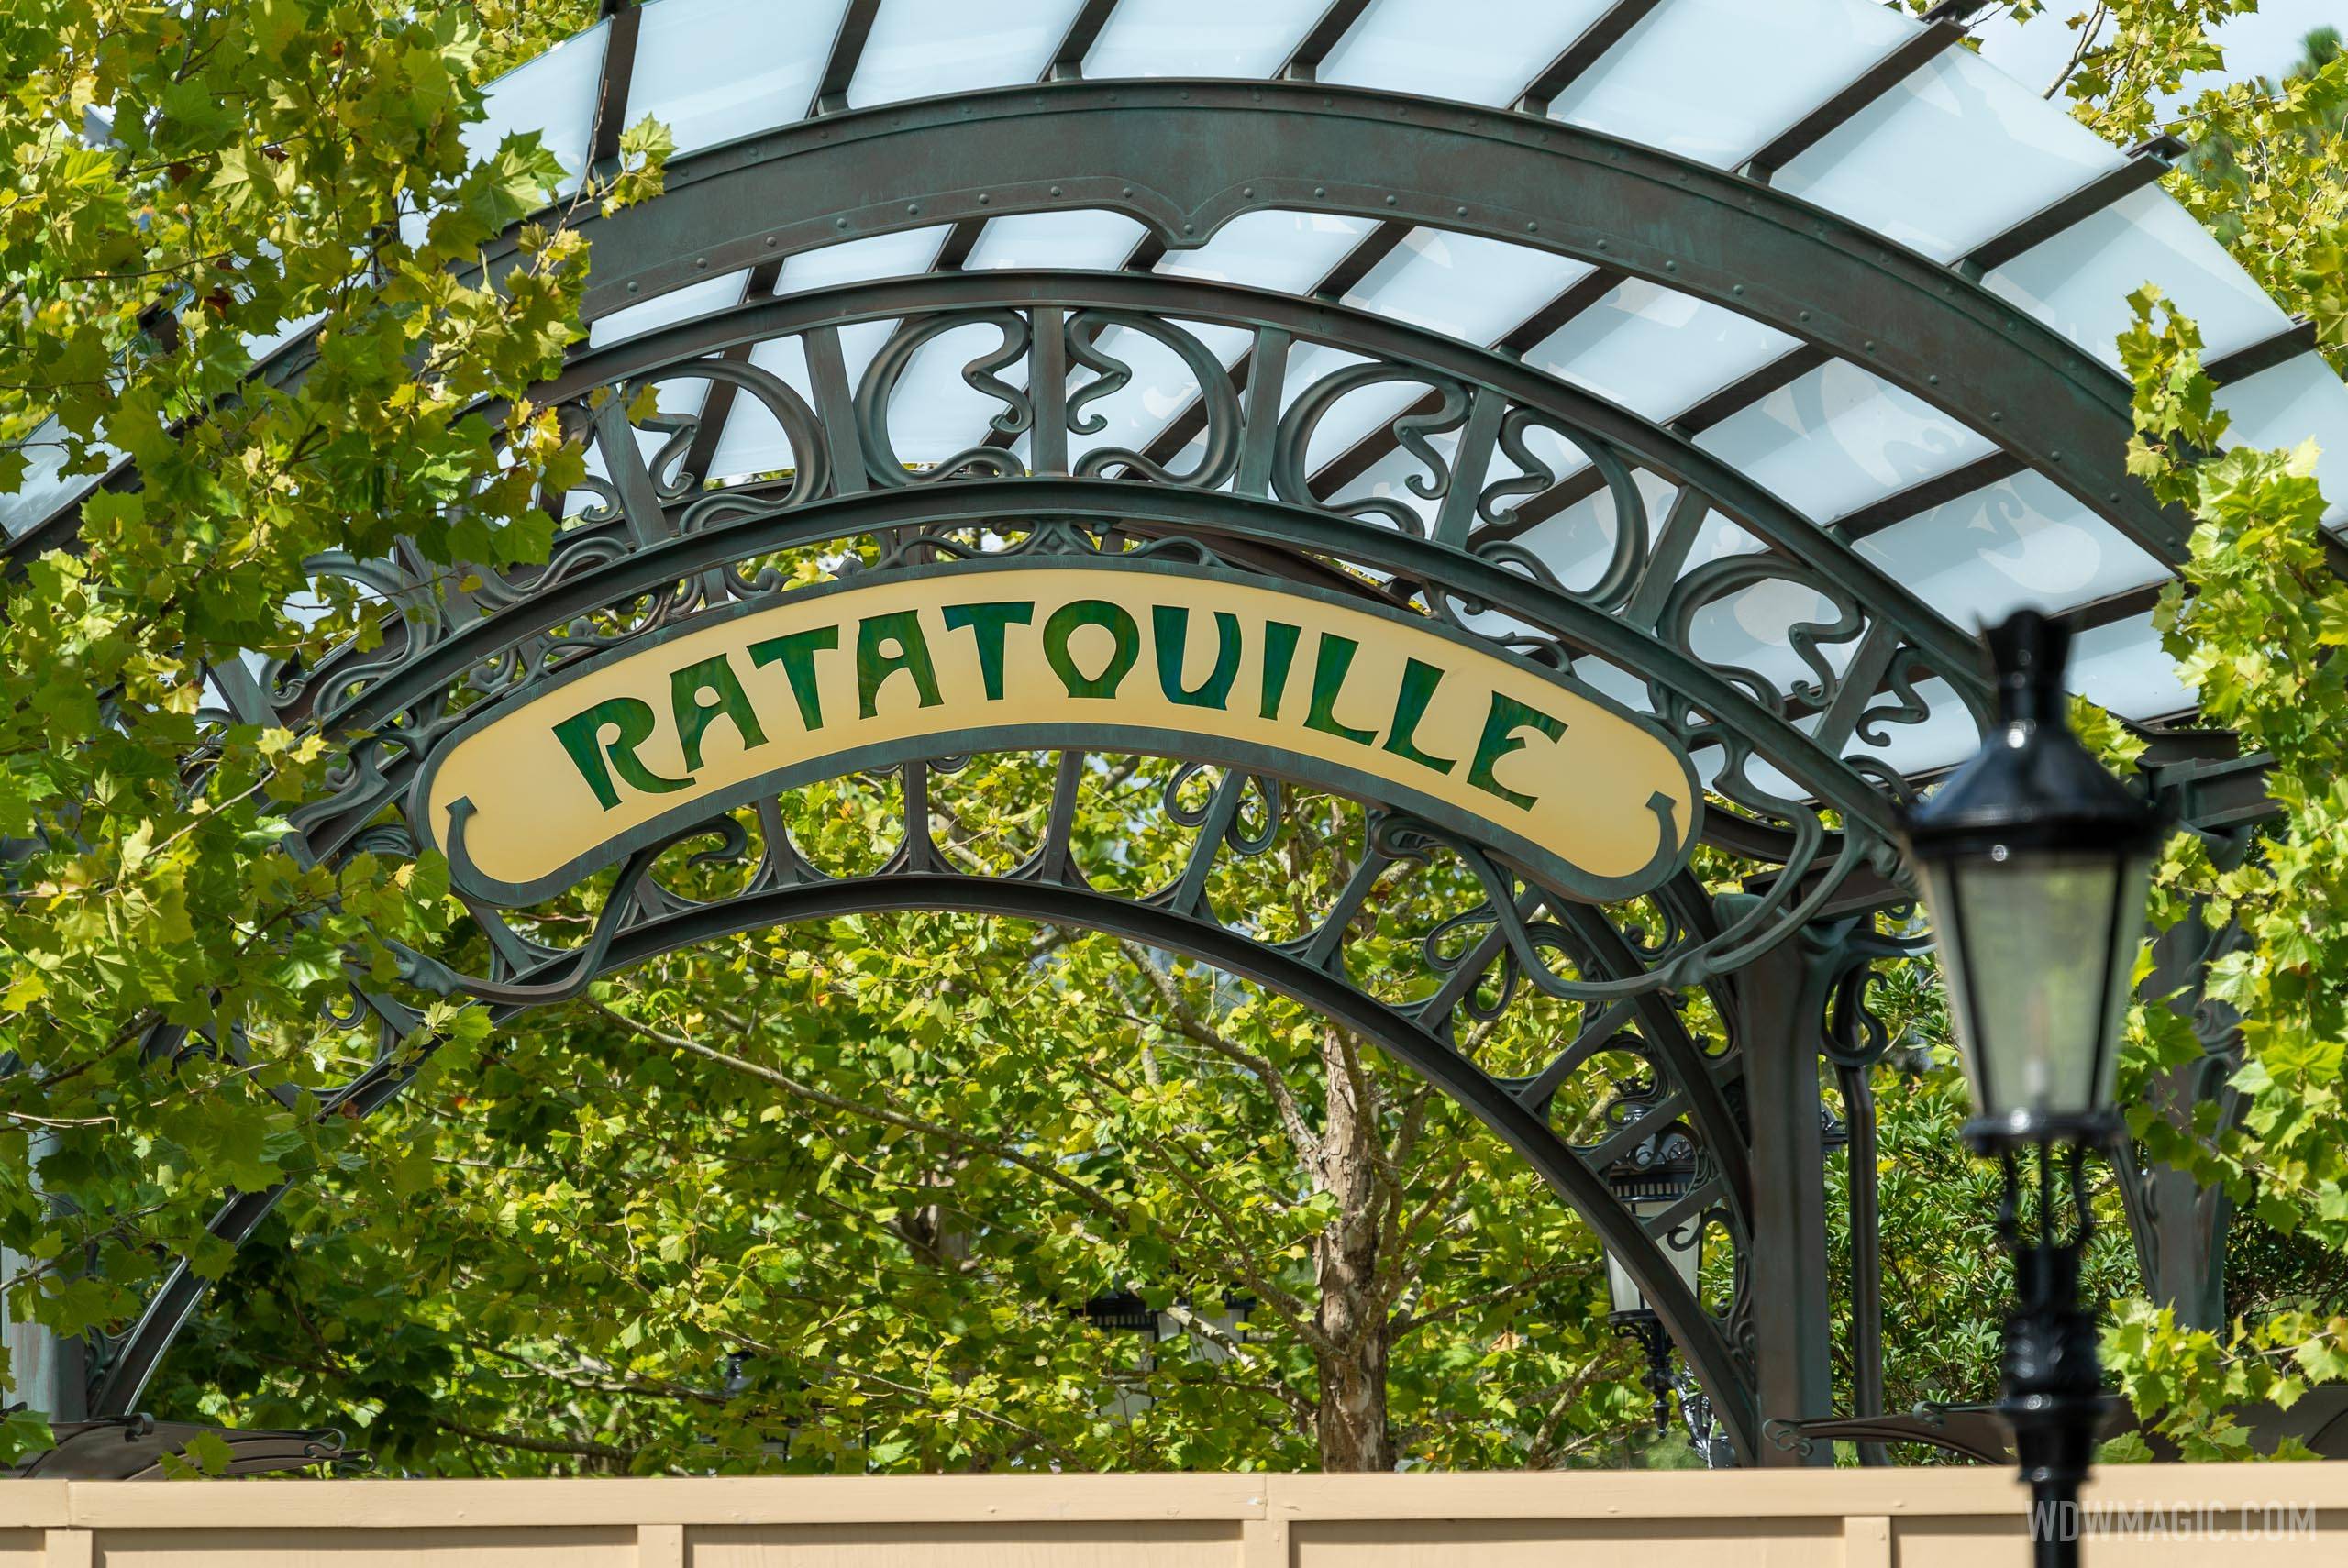 Remy's Ratatouille Adventure construction - August 26 2020